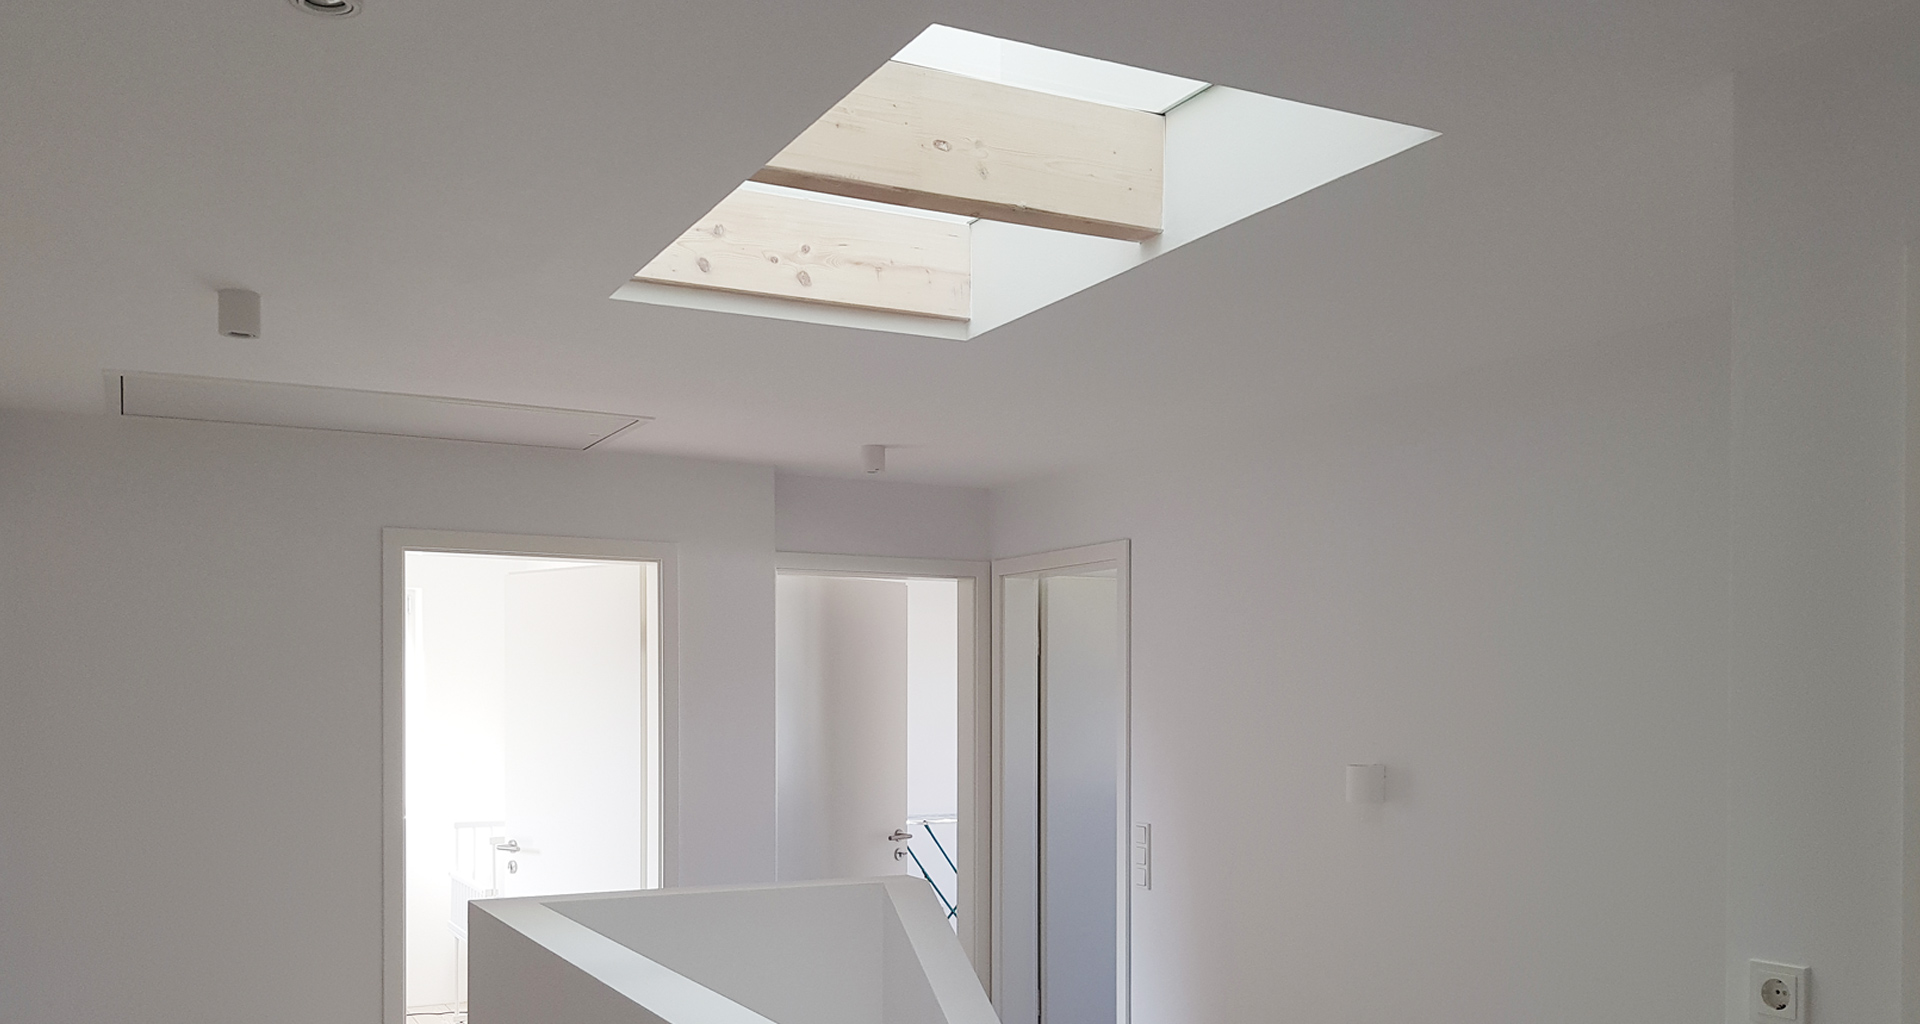 Einfamilienhaus Treppenhaus Fenster in Decke für mehr Licht Emsland Wietmatschen Lohne 2020